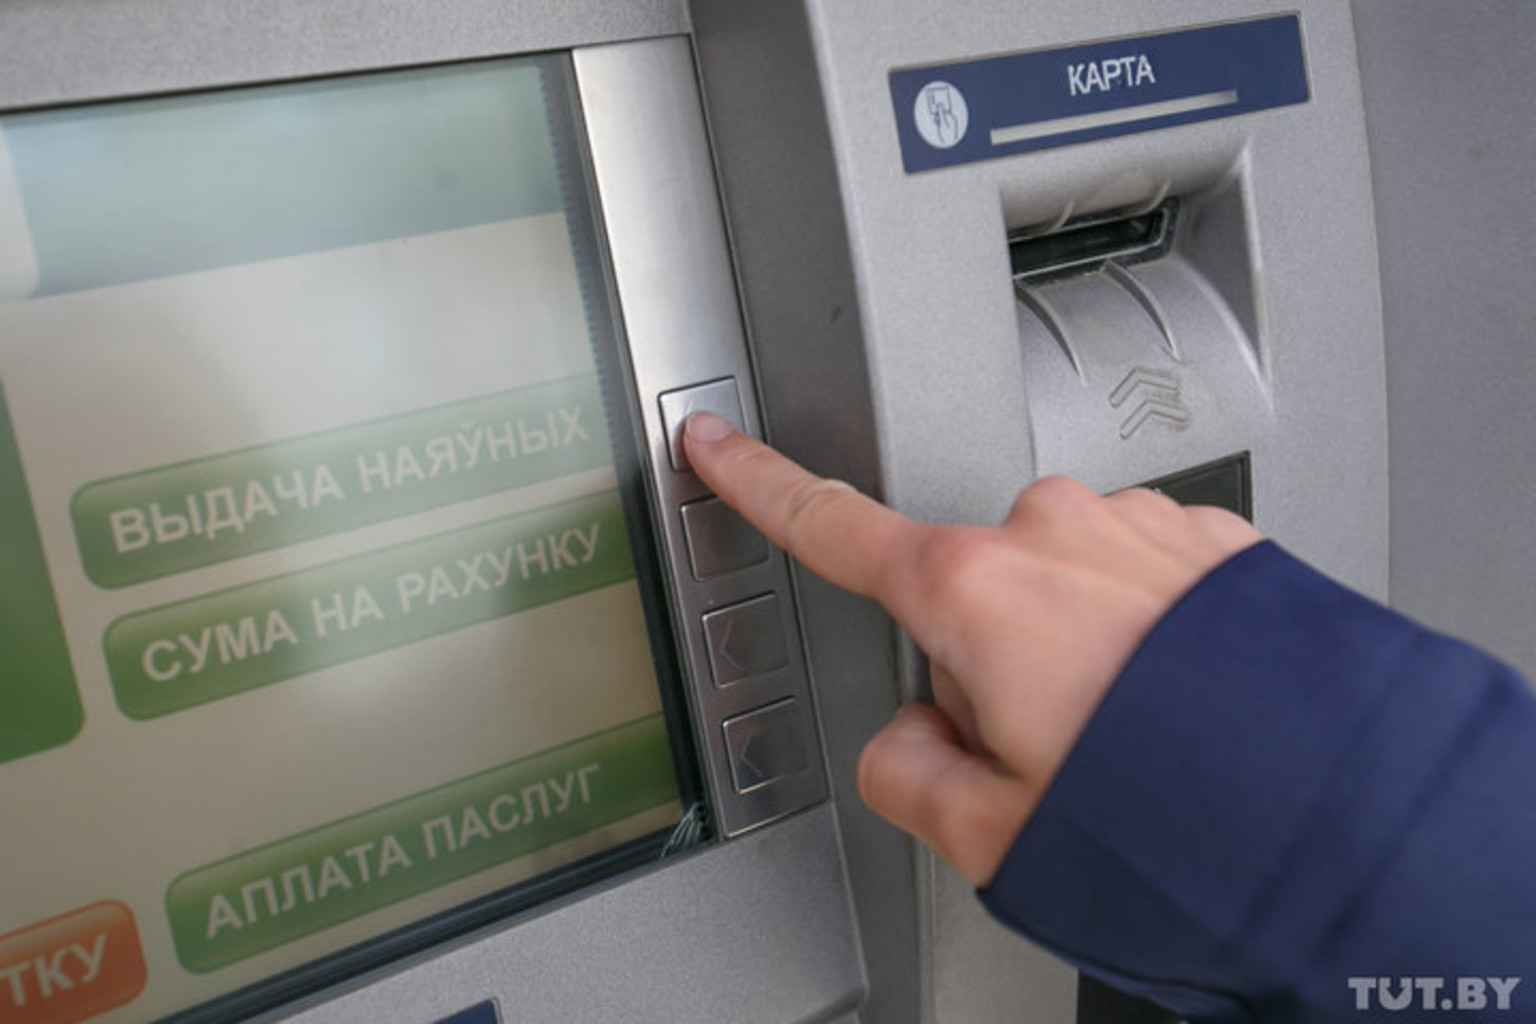 Беларусбанк банкомат рядом. Банкоматы и банковские карточки. Карточка в банкомате. Деньги в банкомате. Снятие денег в банкомате.